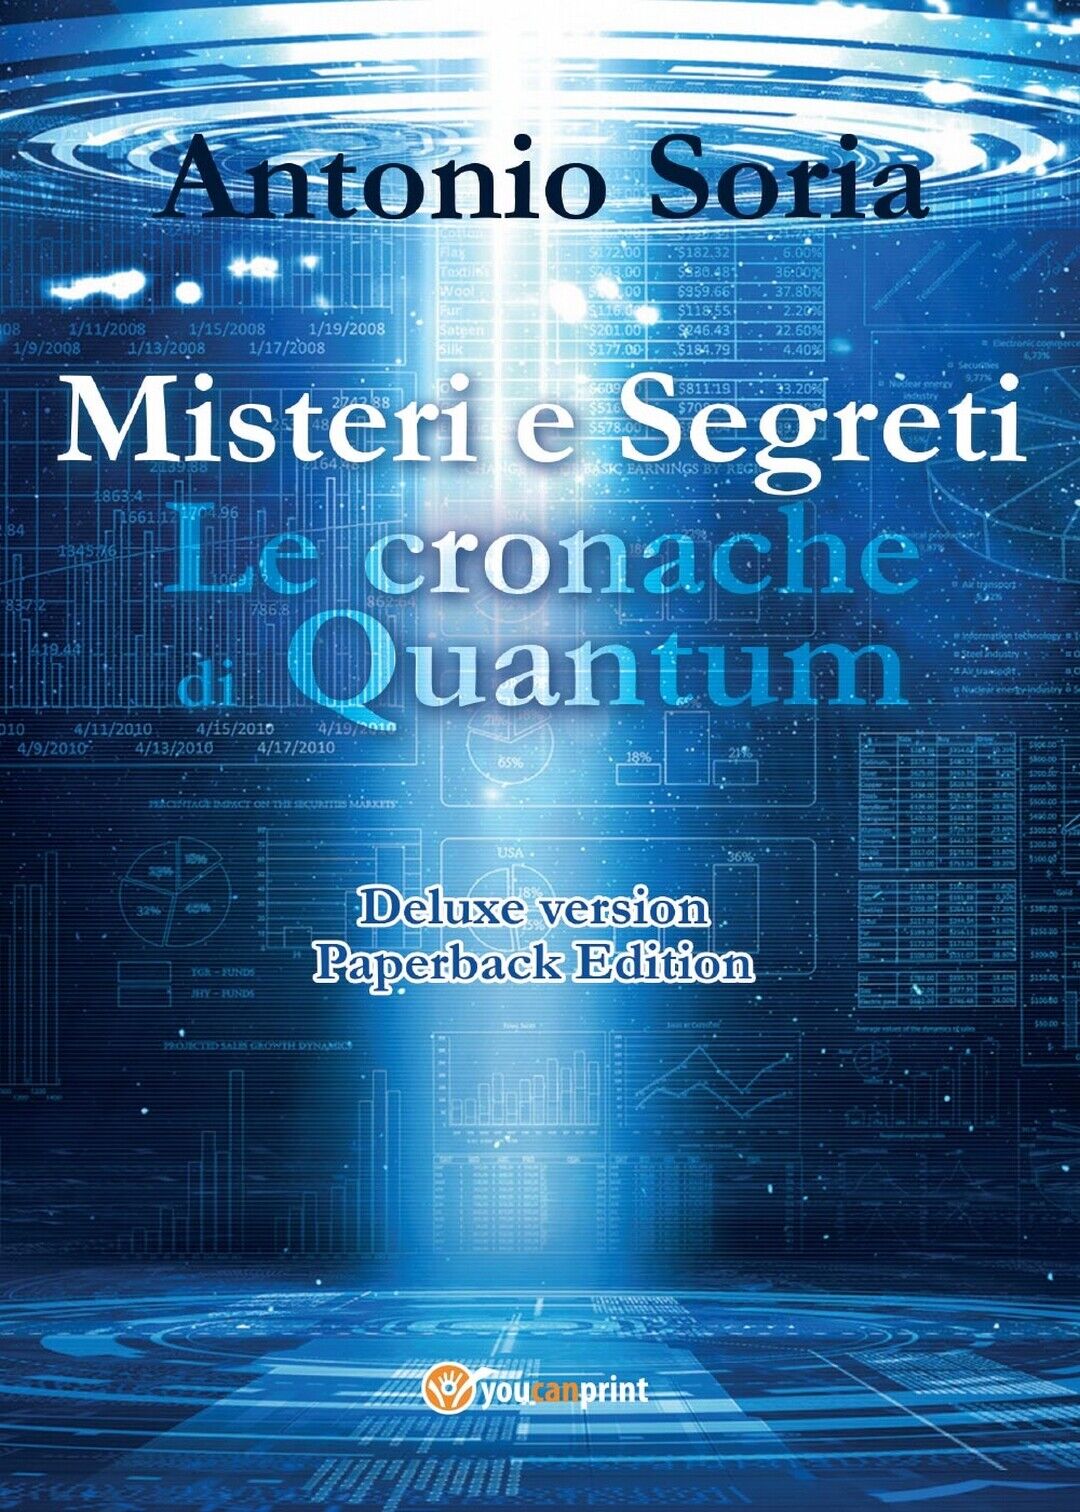 Misteri e Segreti. Le cronache di Quantum (Deluxe version) Paperback Edition  libro usato